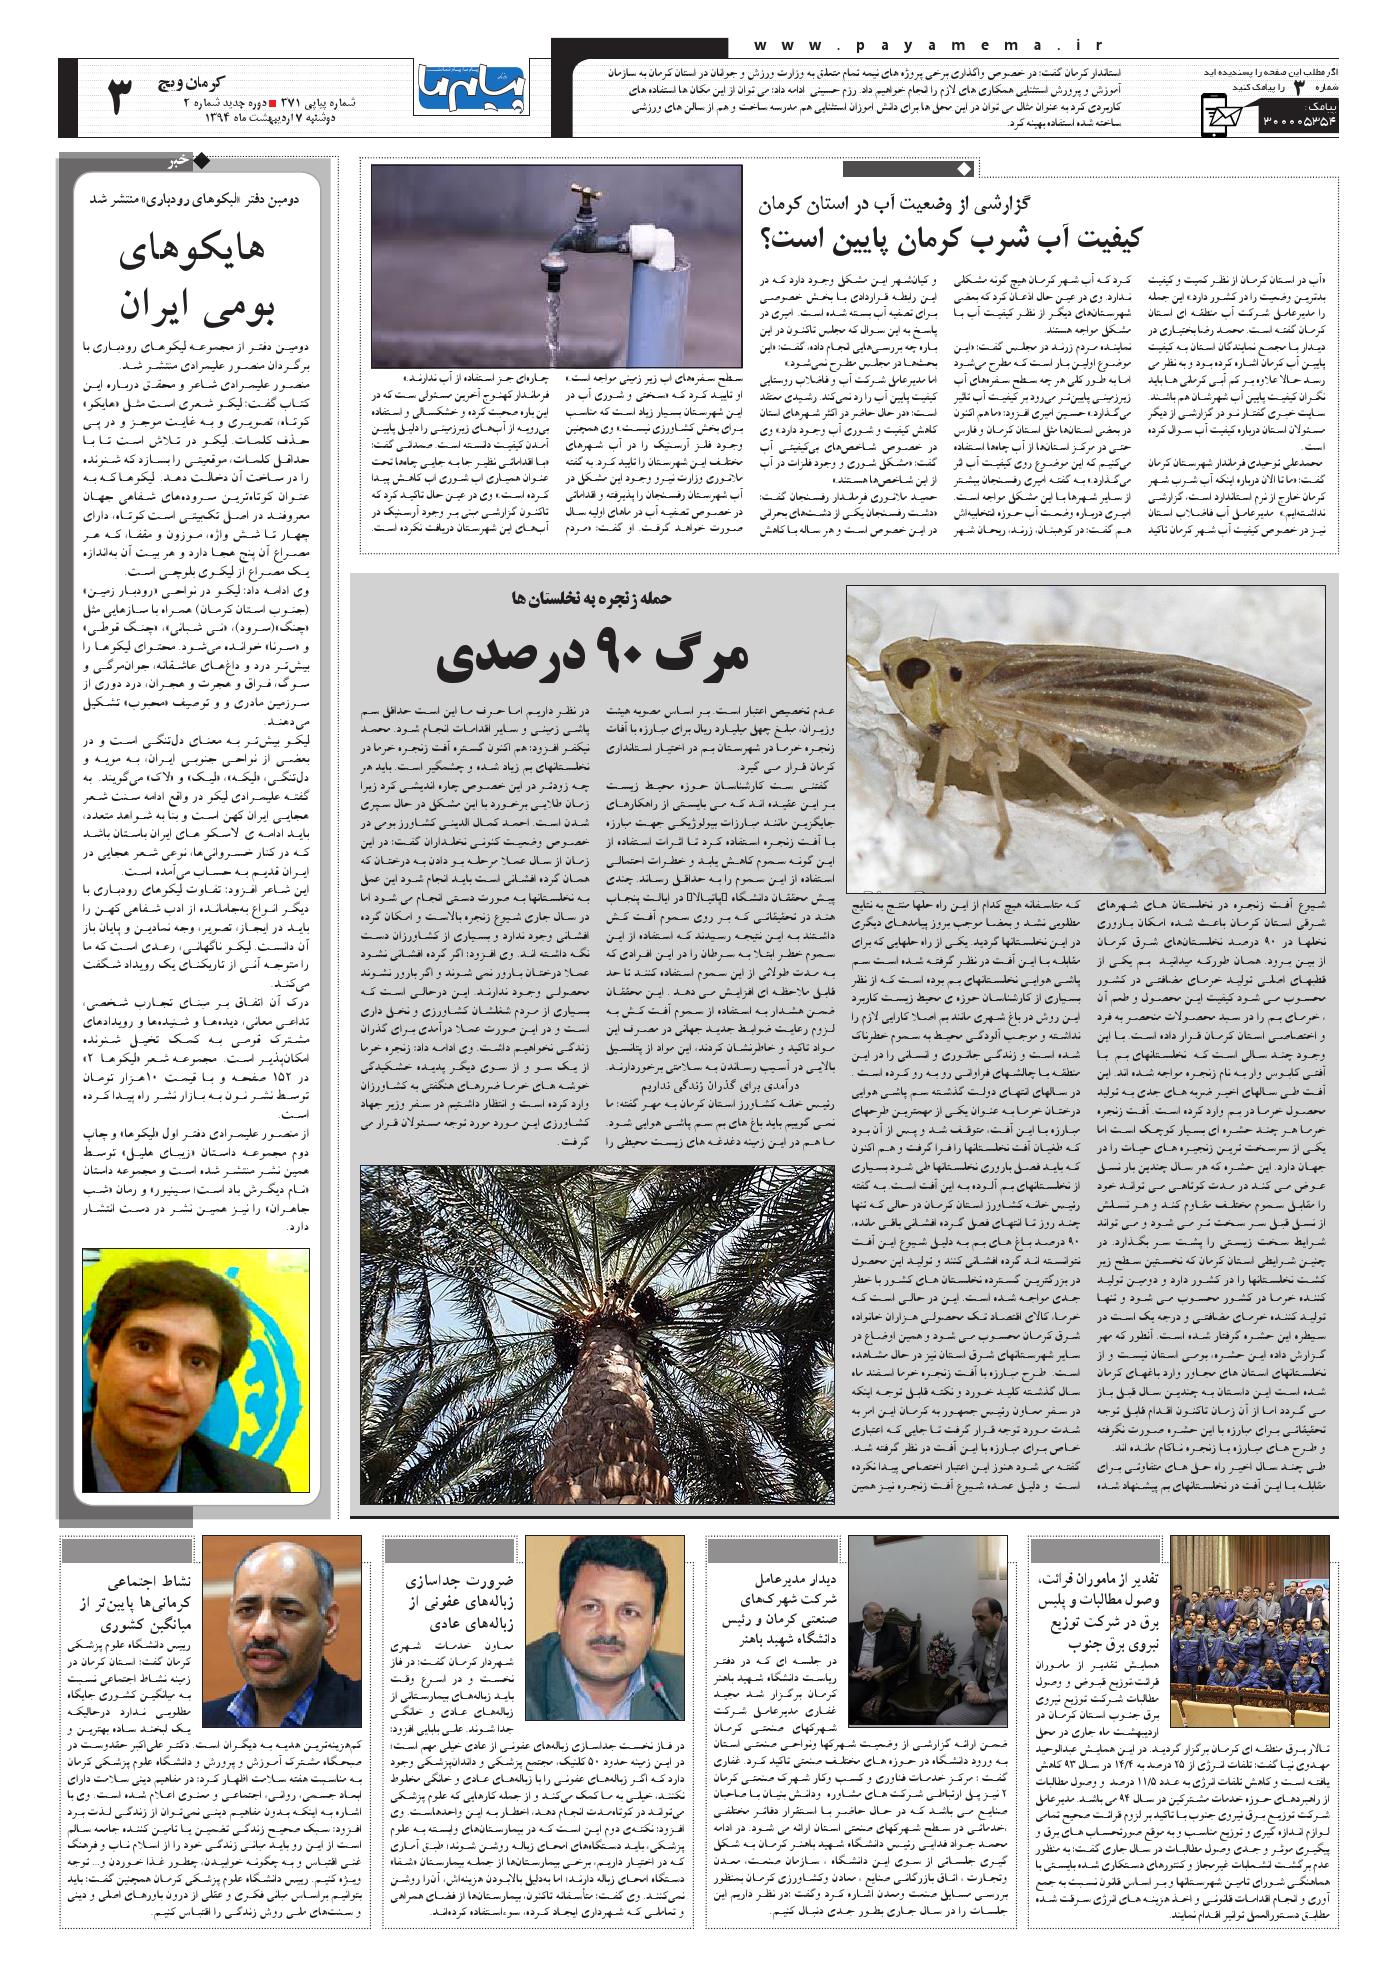 صفحه کرمان ویچ شماره 371 روزنامه پیام ما